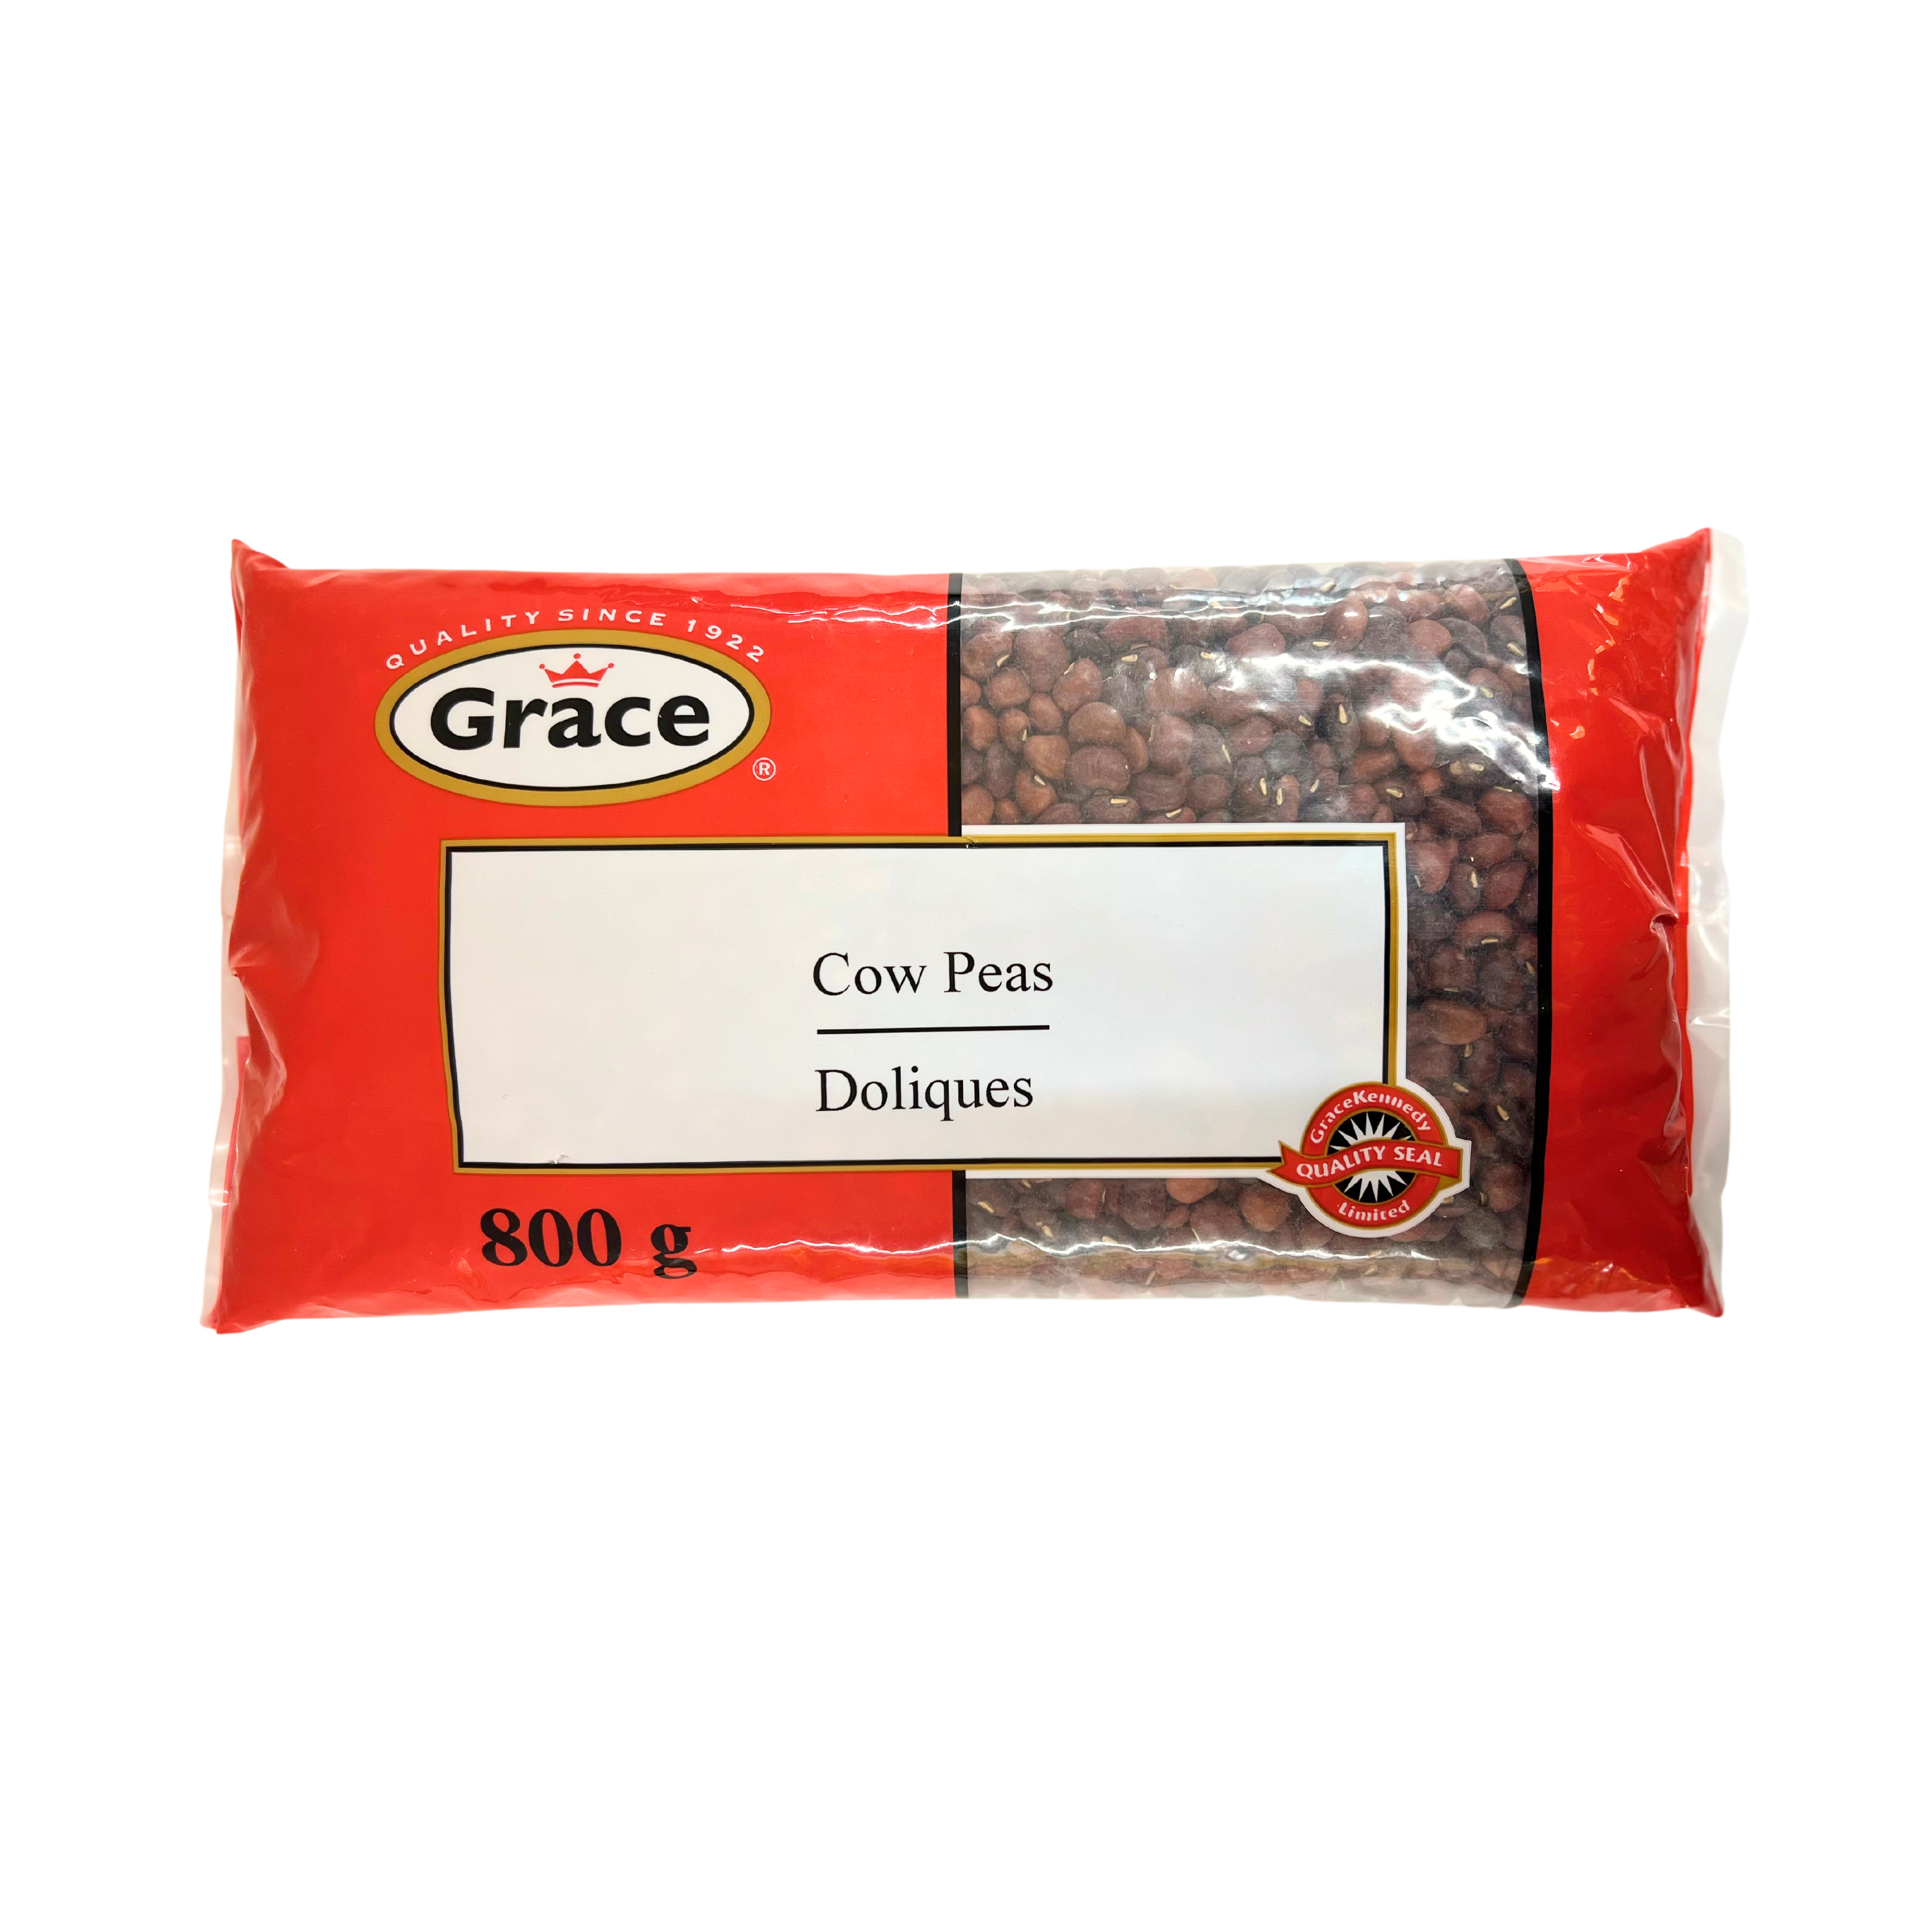 Grace Cow Peas 800g